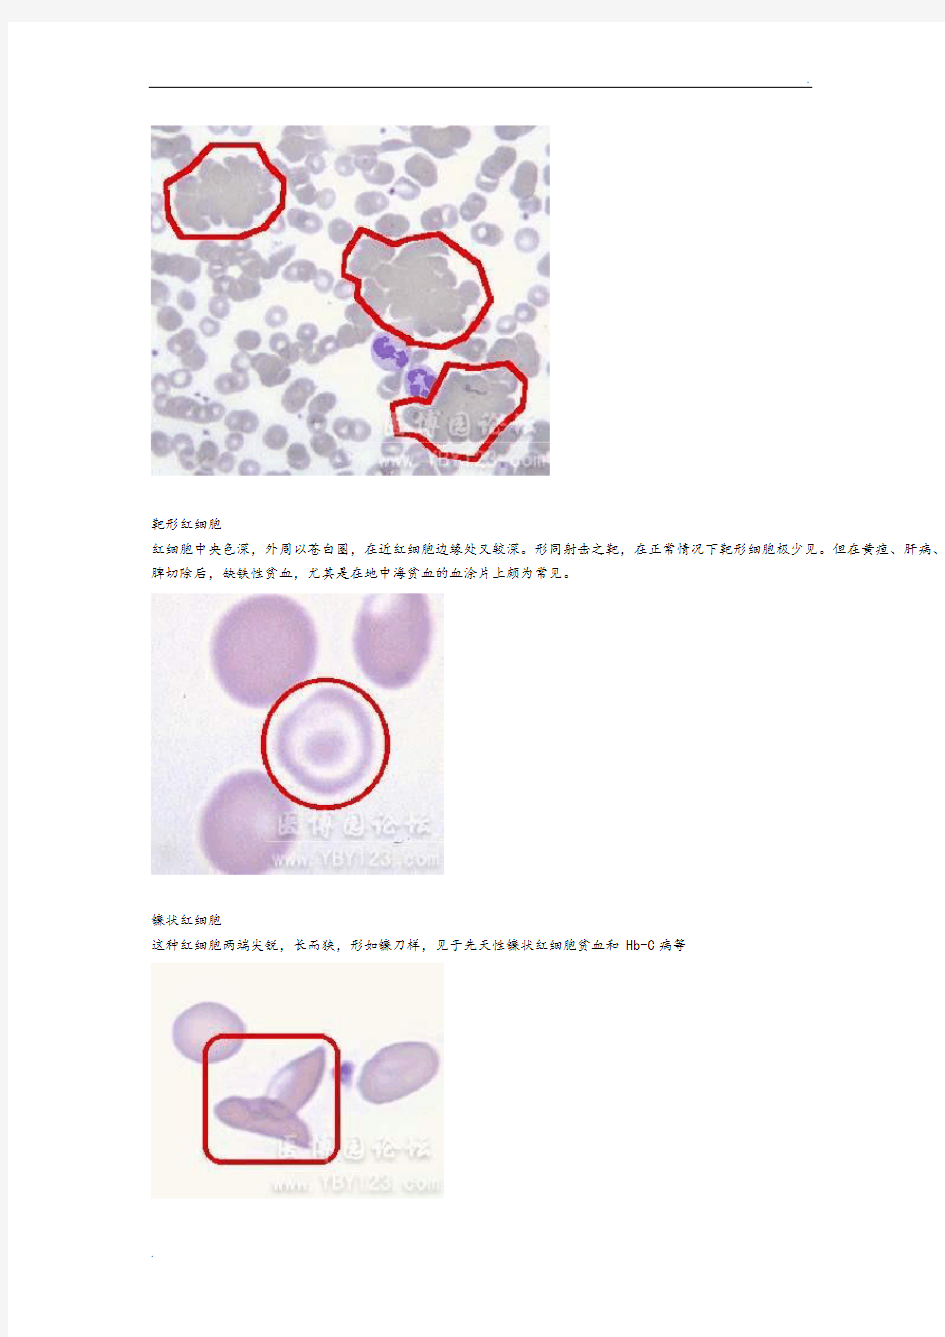 各种血细胞模式图 (2)